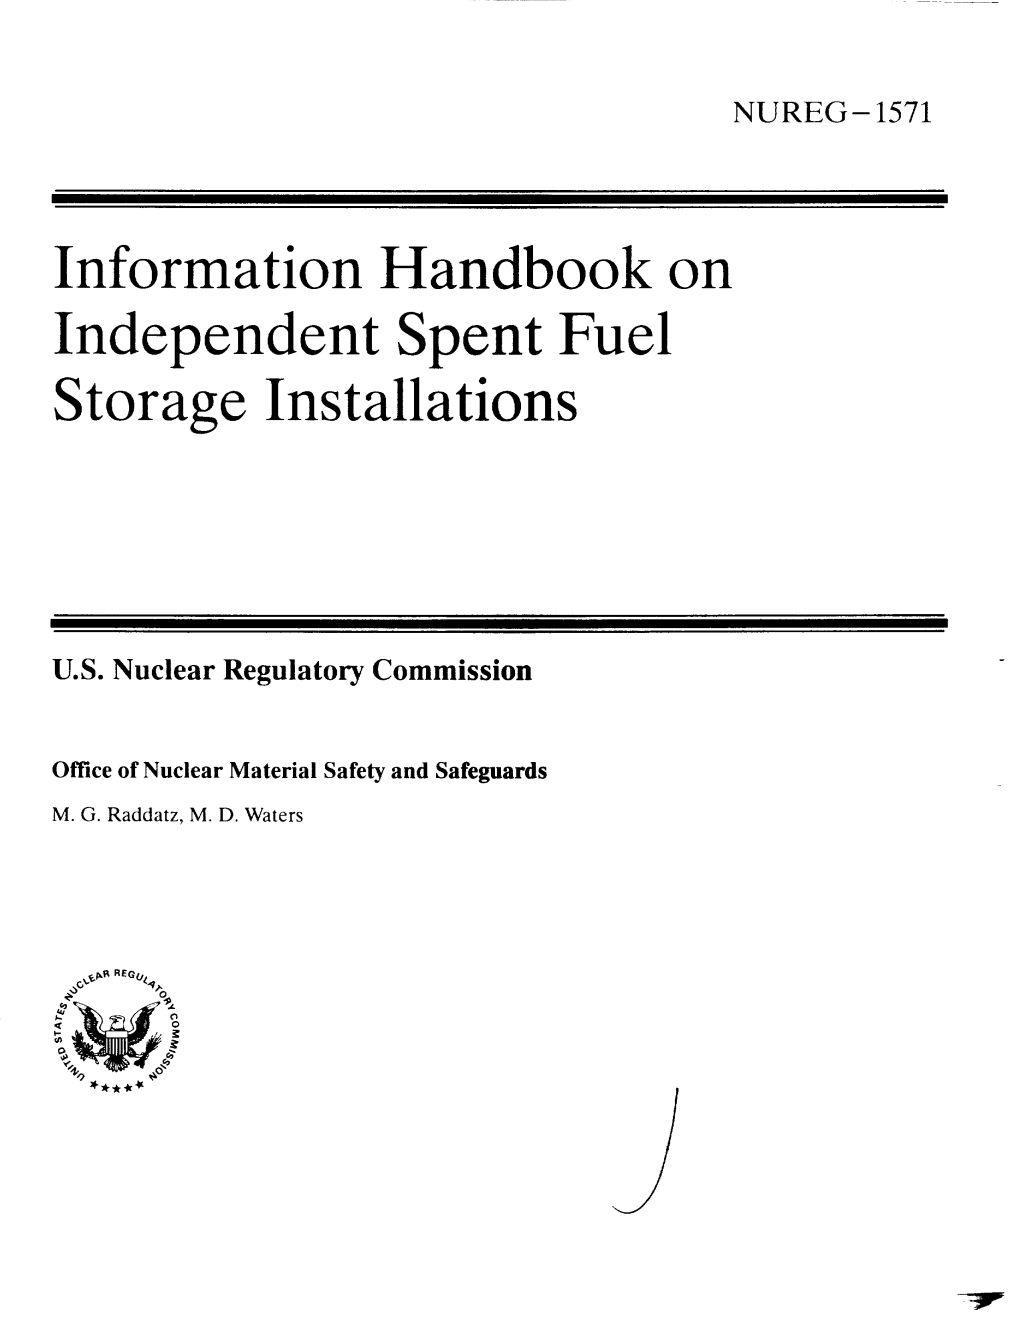 NUREG-1571: Information Handbook on Independent Spent Fuel Storage